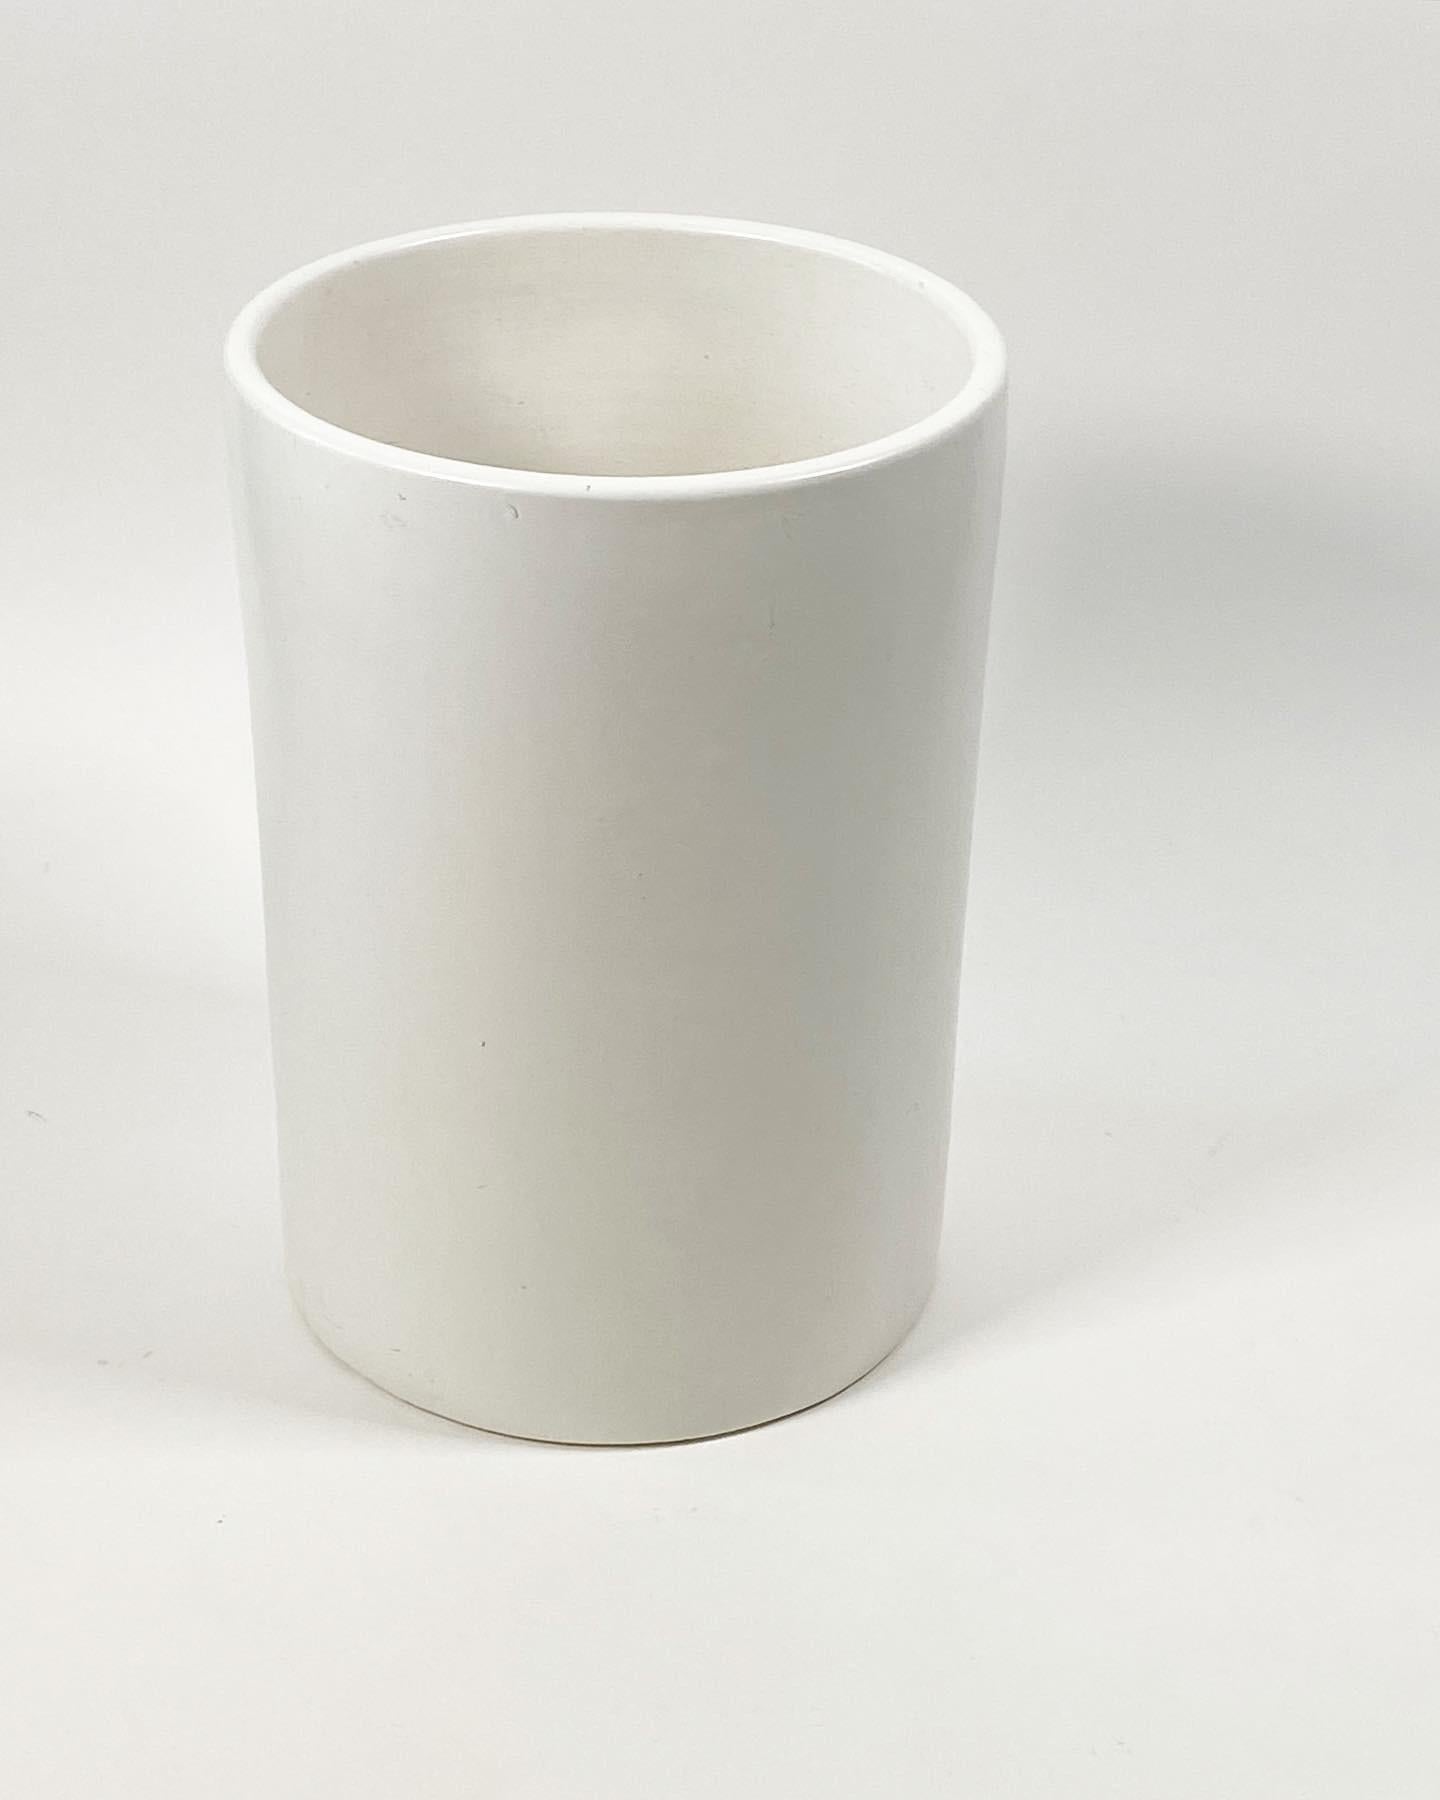 Weißer Keramik-Zylinder-Pflanzkübel, entworfen von La Gardo Tackett für Architectural Pottery of Southern California um die 1950er und 60er Jahre. Dieses Modell wird C-12 genannt. Mit einfachen, klaren Linien, die mit vielen Innen-und Außenbereich